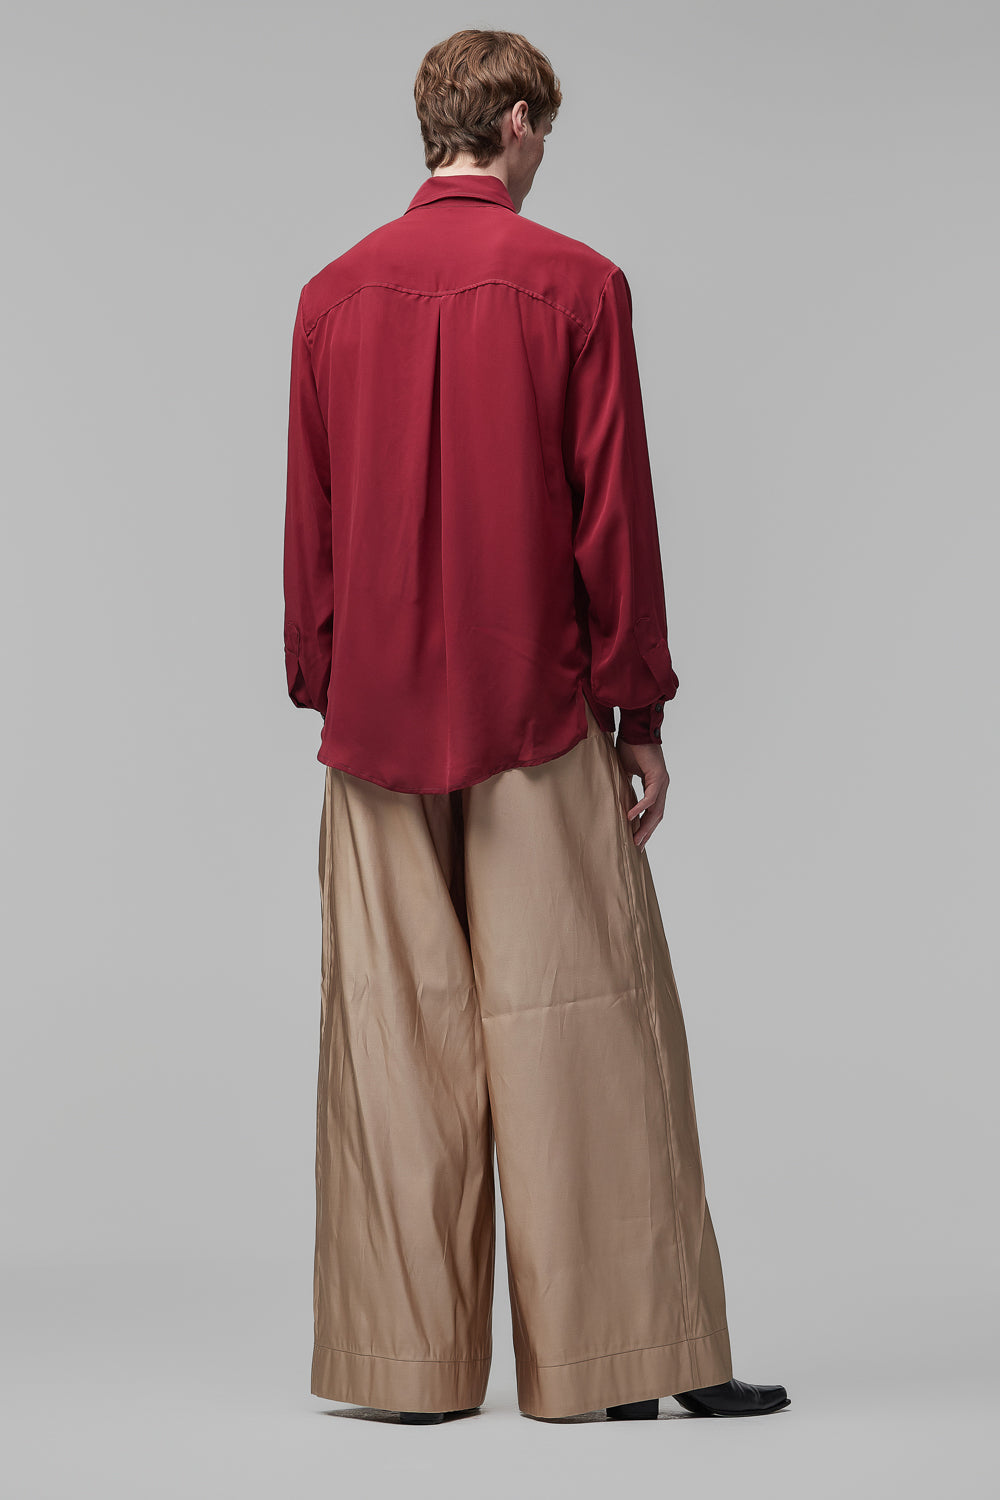 Camisa de Mangas Longas em Cetim de Seda Fosco Vermelho-Cereja